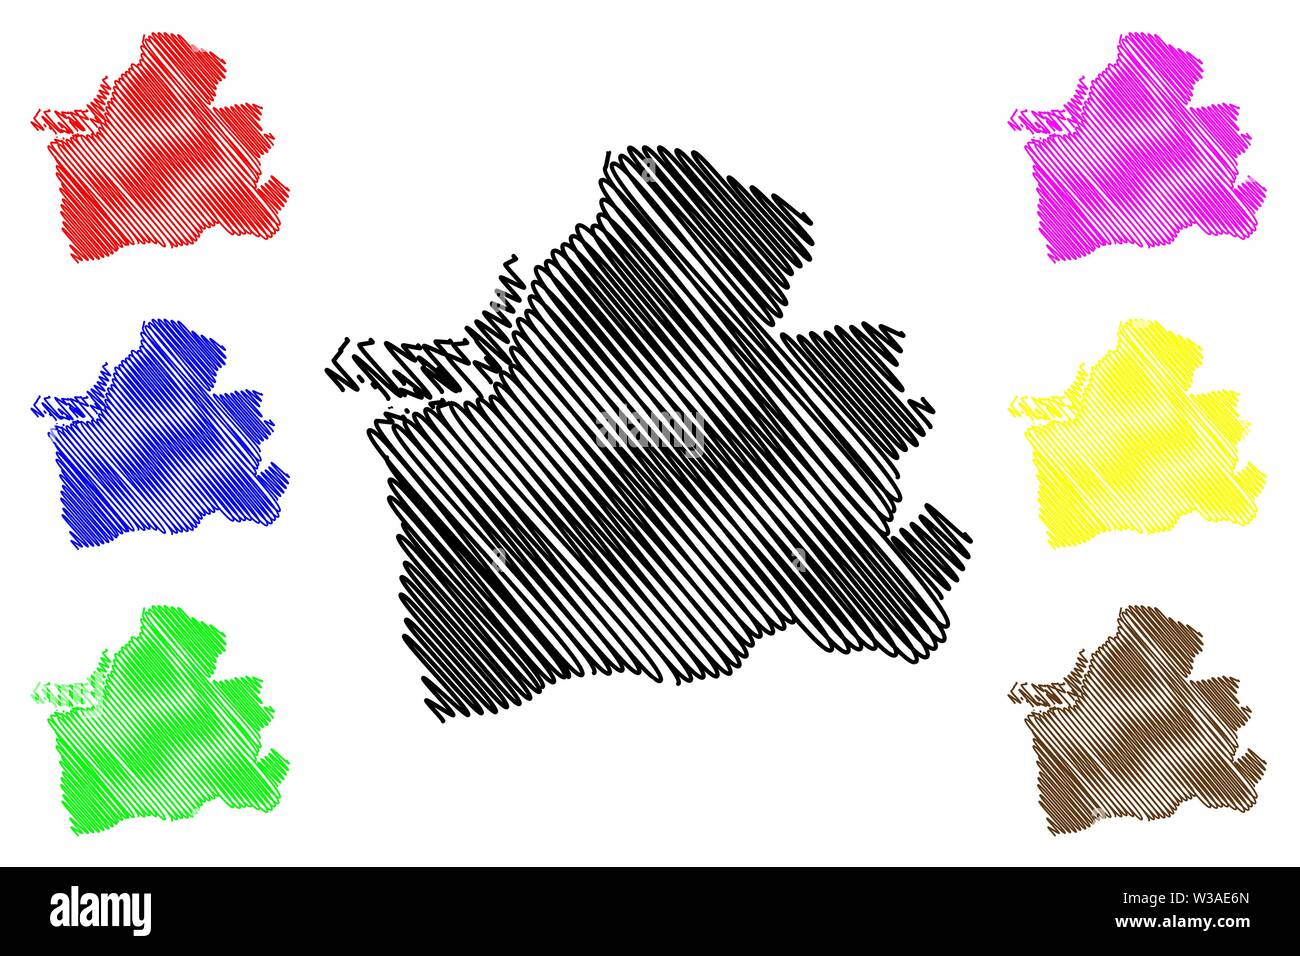 La provincia de El Oro (República de Ecuador, Provincias de Ecuador) Mapa ilustración vectorial, dibujo a mano alzada El Oro mapa Ilustración del Vector